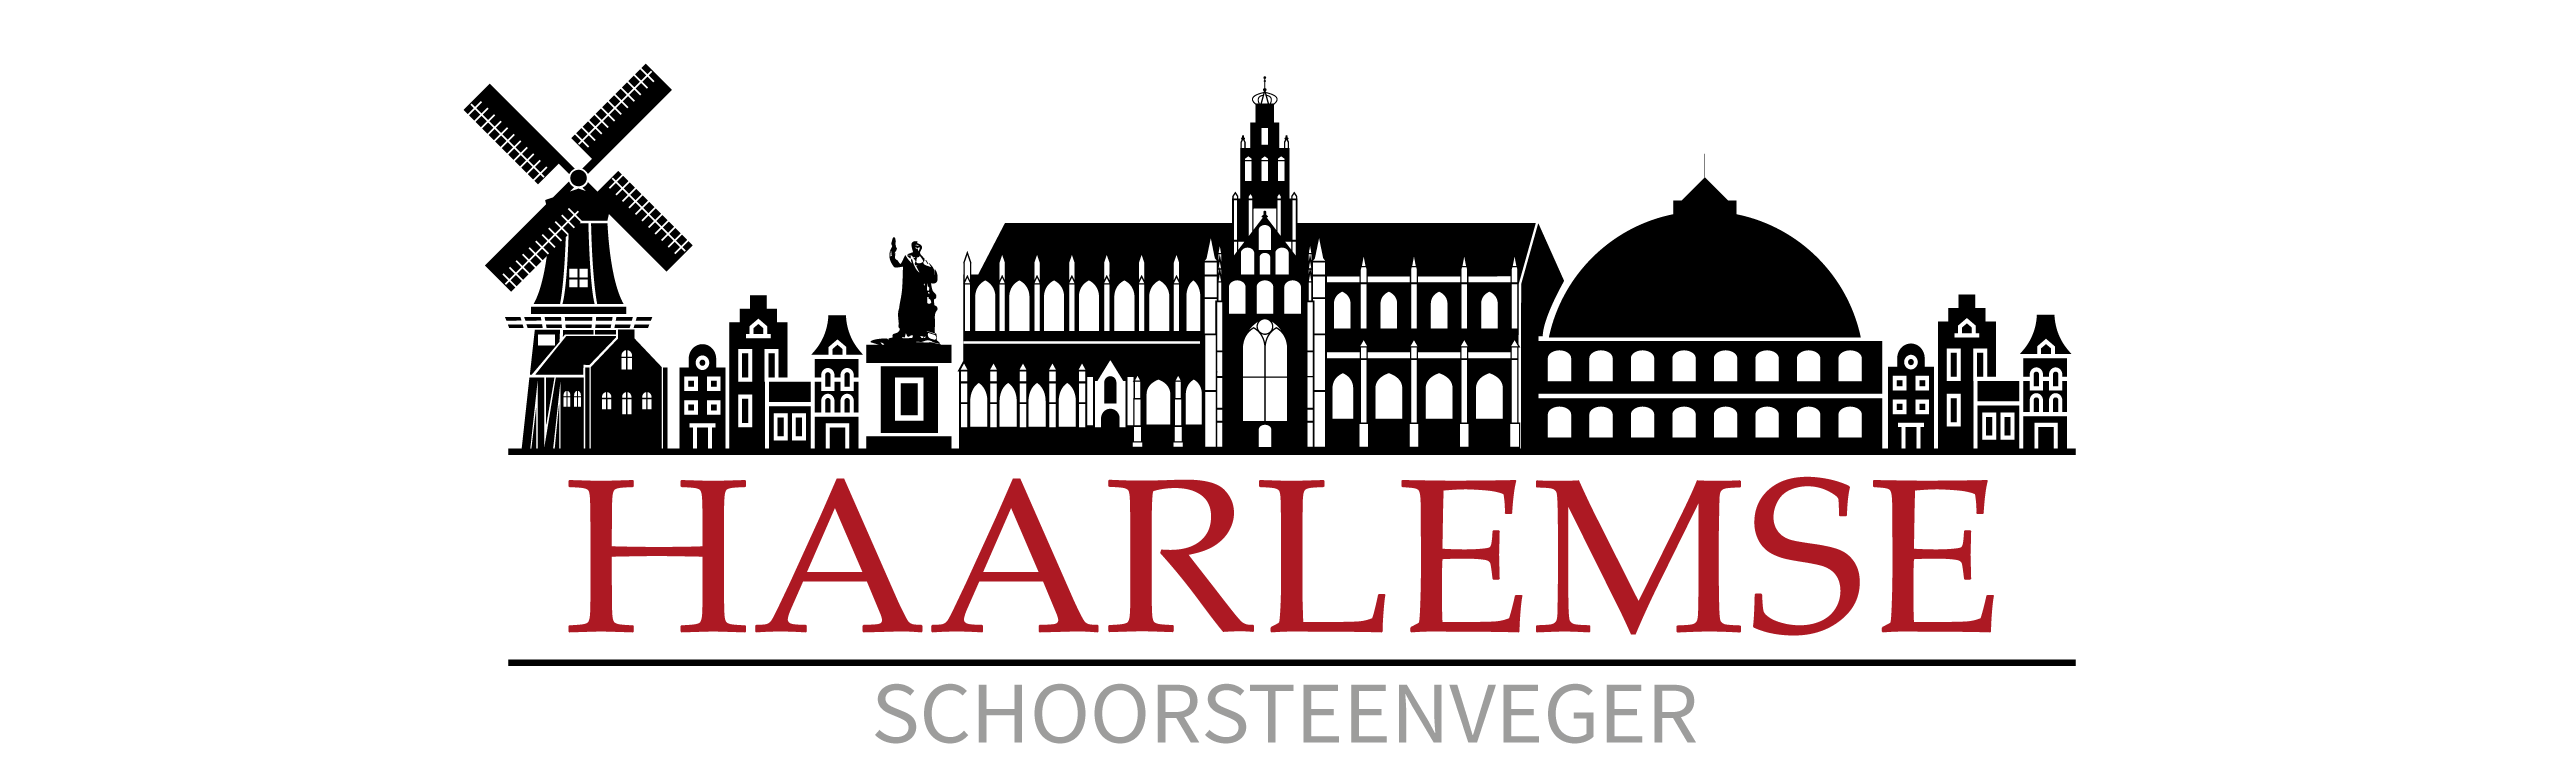 Profielfoto van De Haarlemse Schoorsteenveger